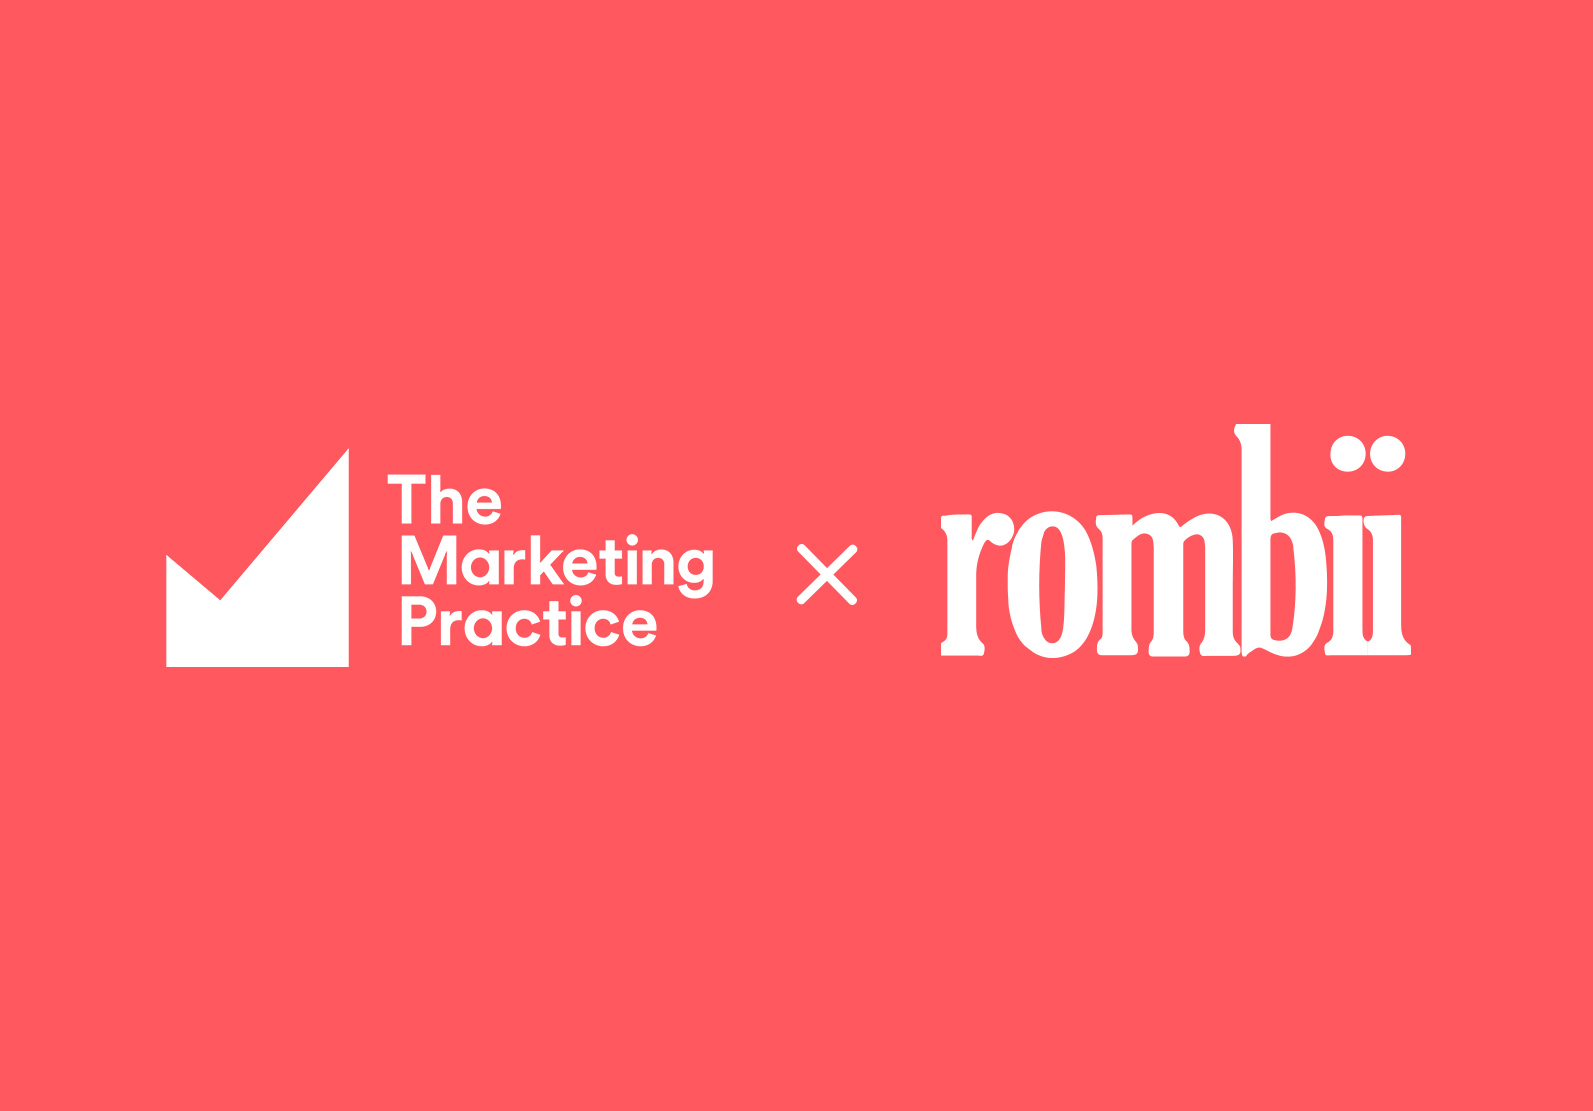 The Marketing Practice x Rombii